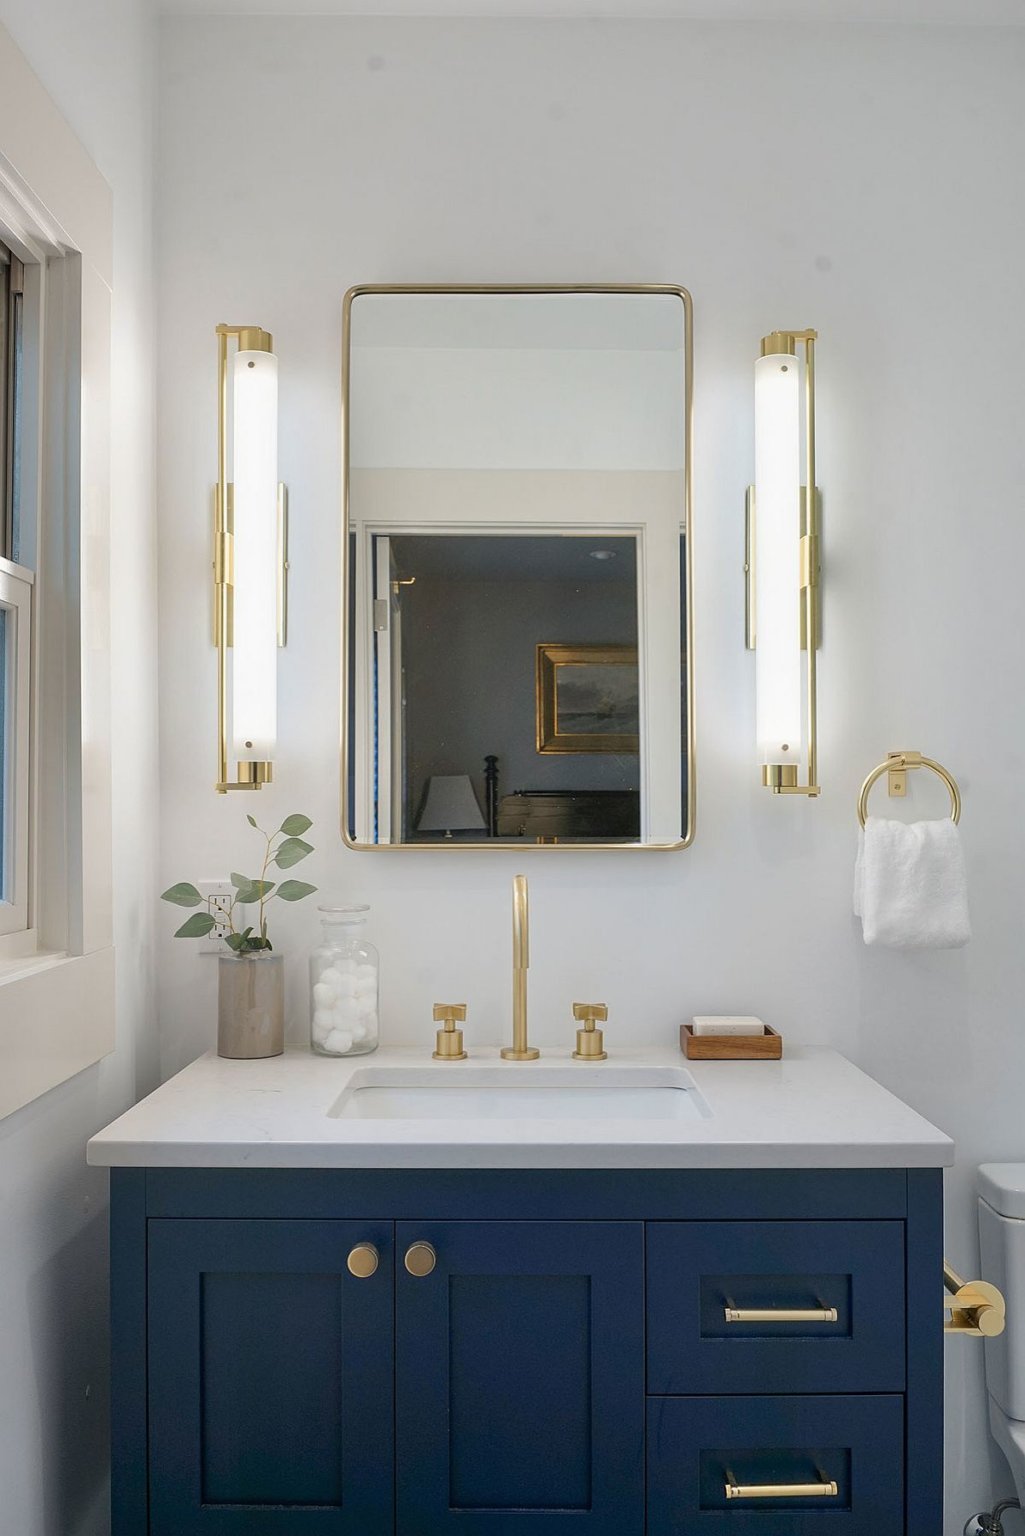 Hình ảnh một góc phòng tắm với tủ màu xanh dương, gương lớn, tay nắm vàng đồng